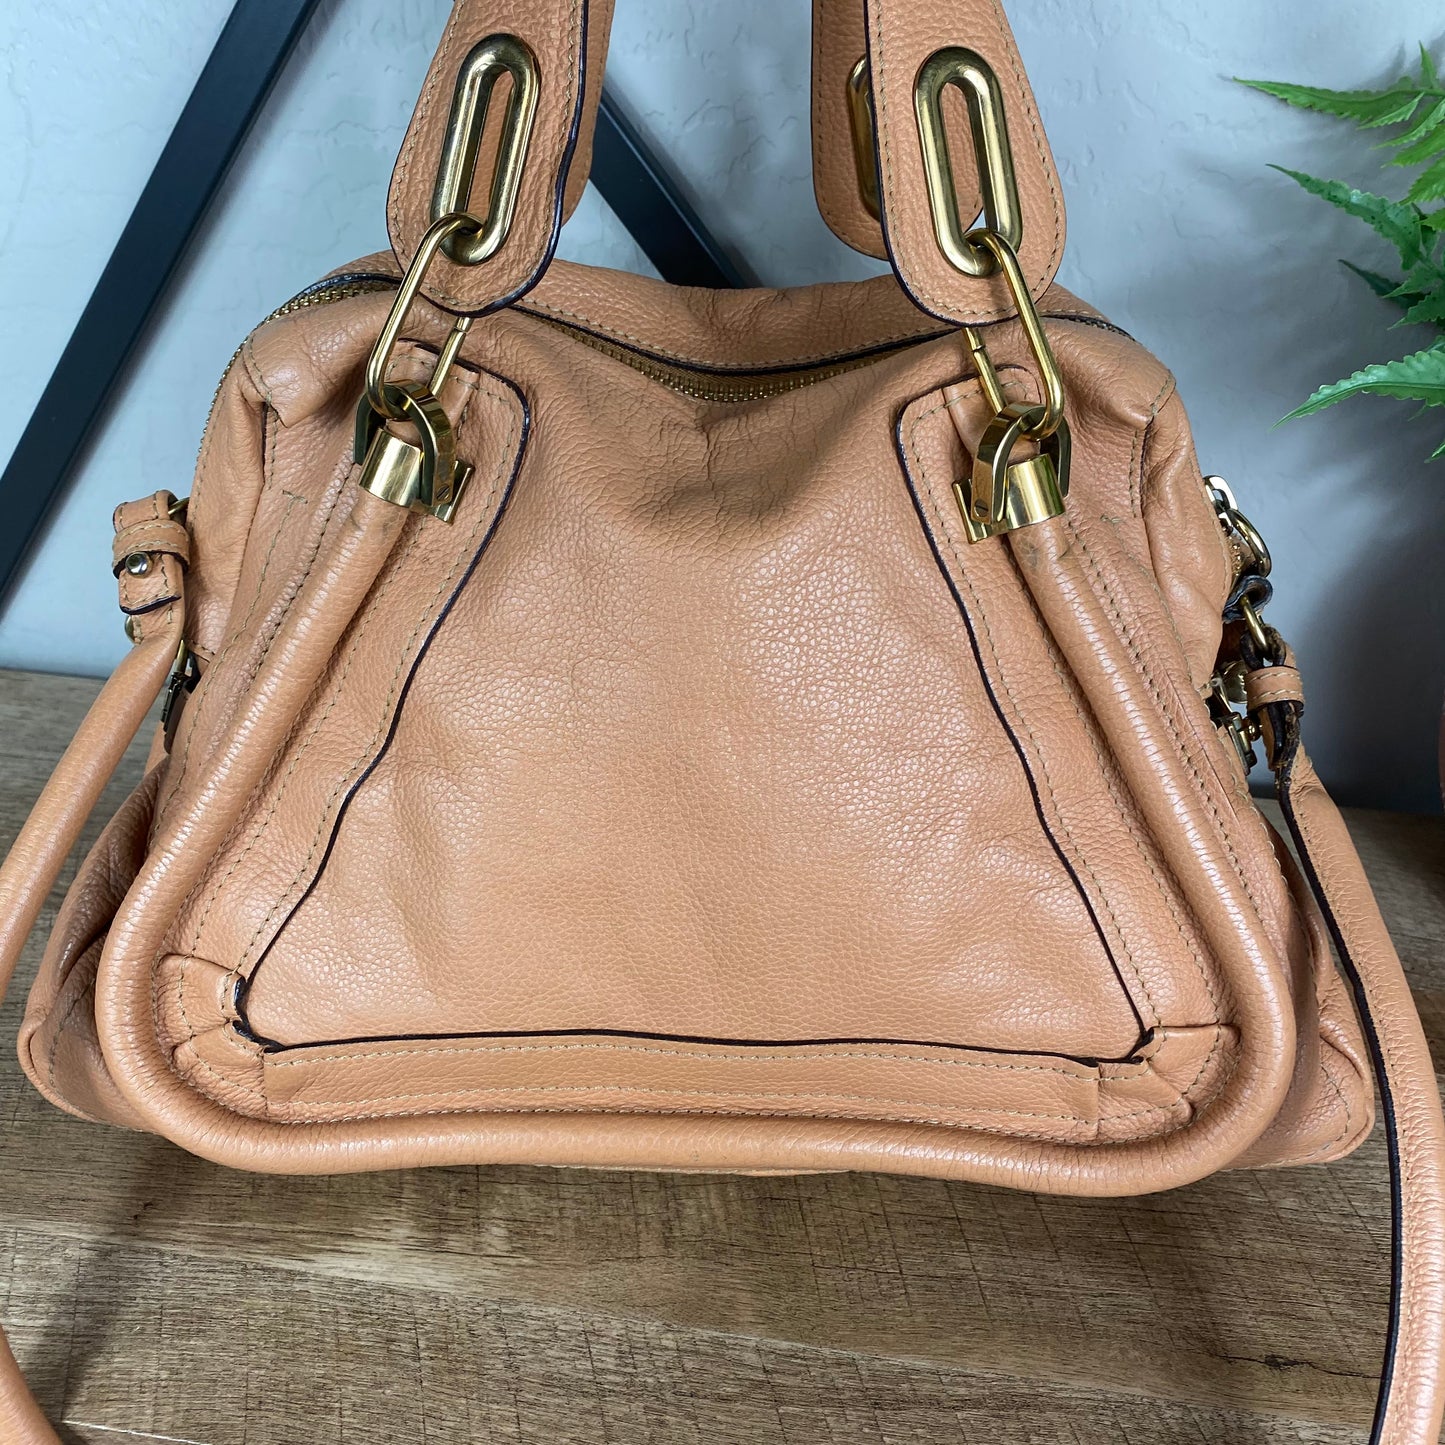 Chloé Paraty Medium Leather Bag